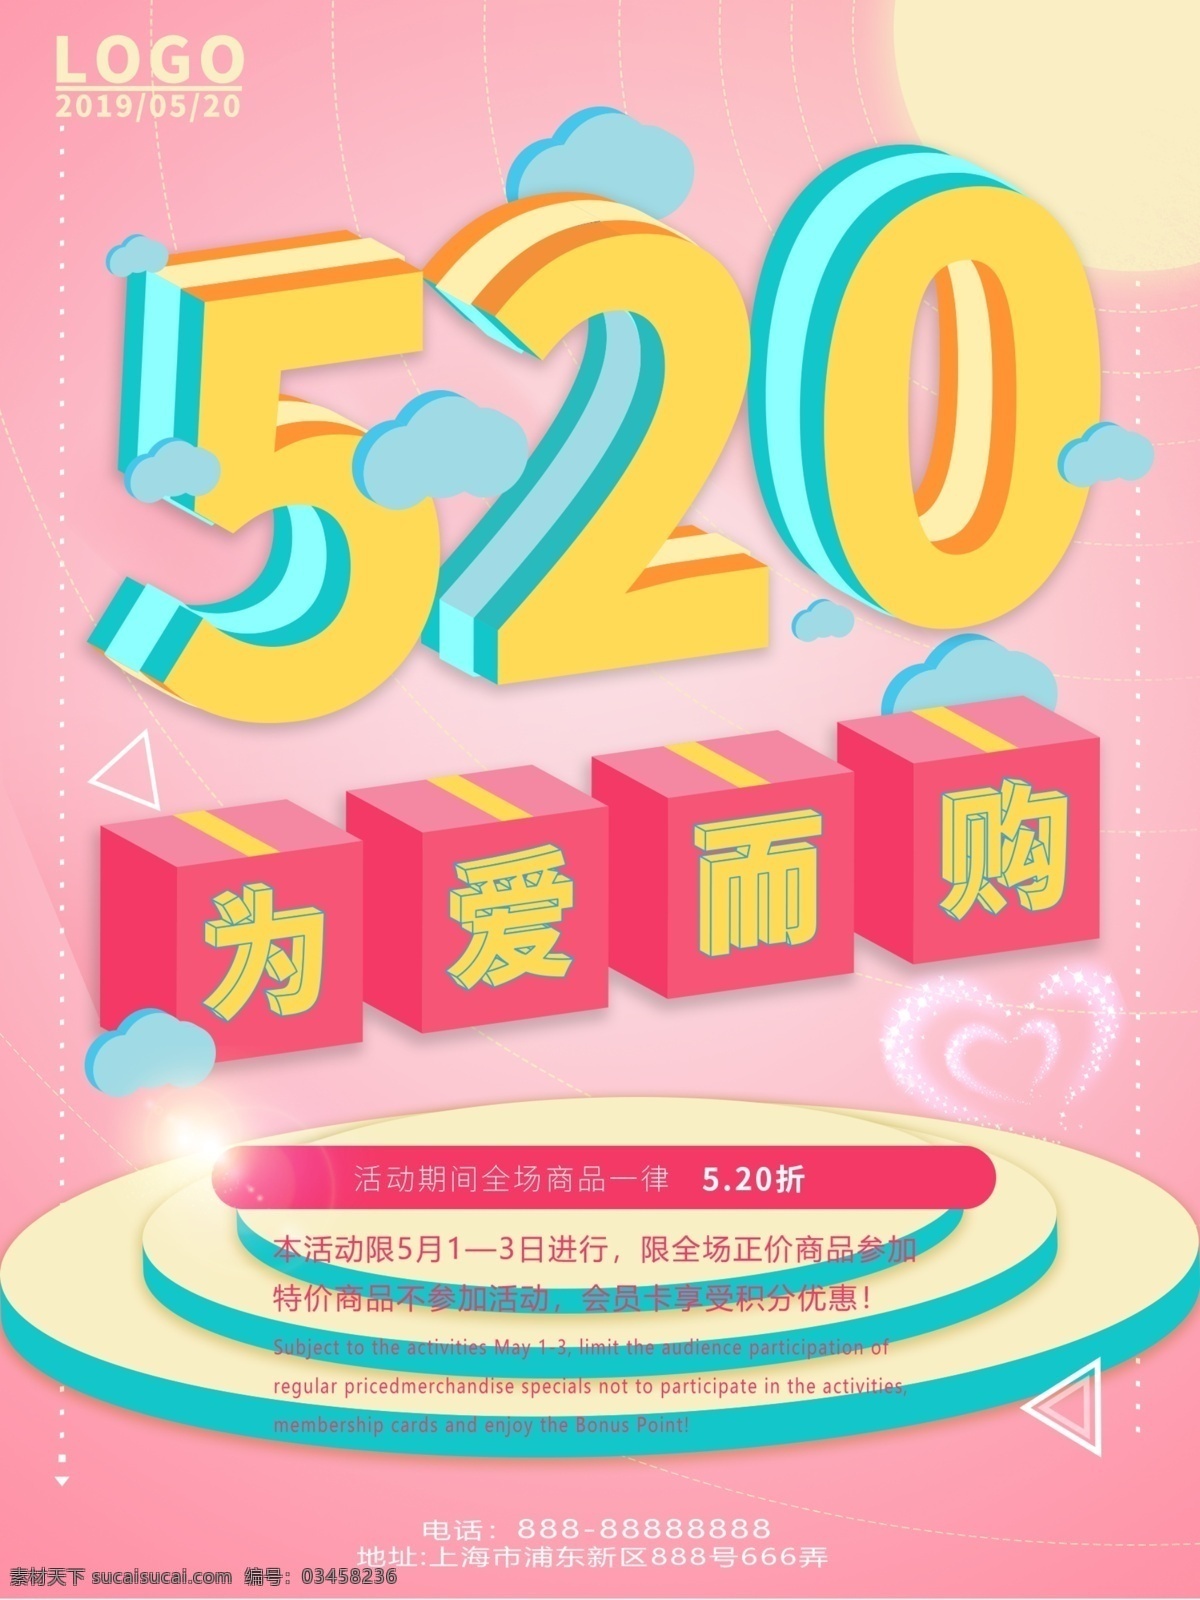 520 爱 购 d 海报 为爱而购 2.5d 字体设计 促销